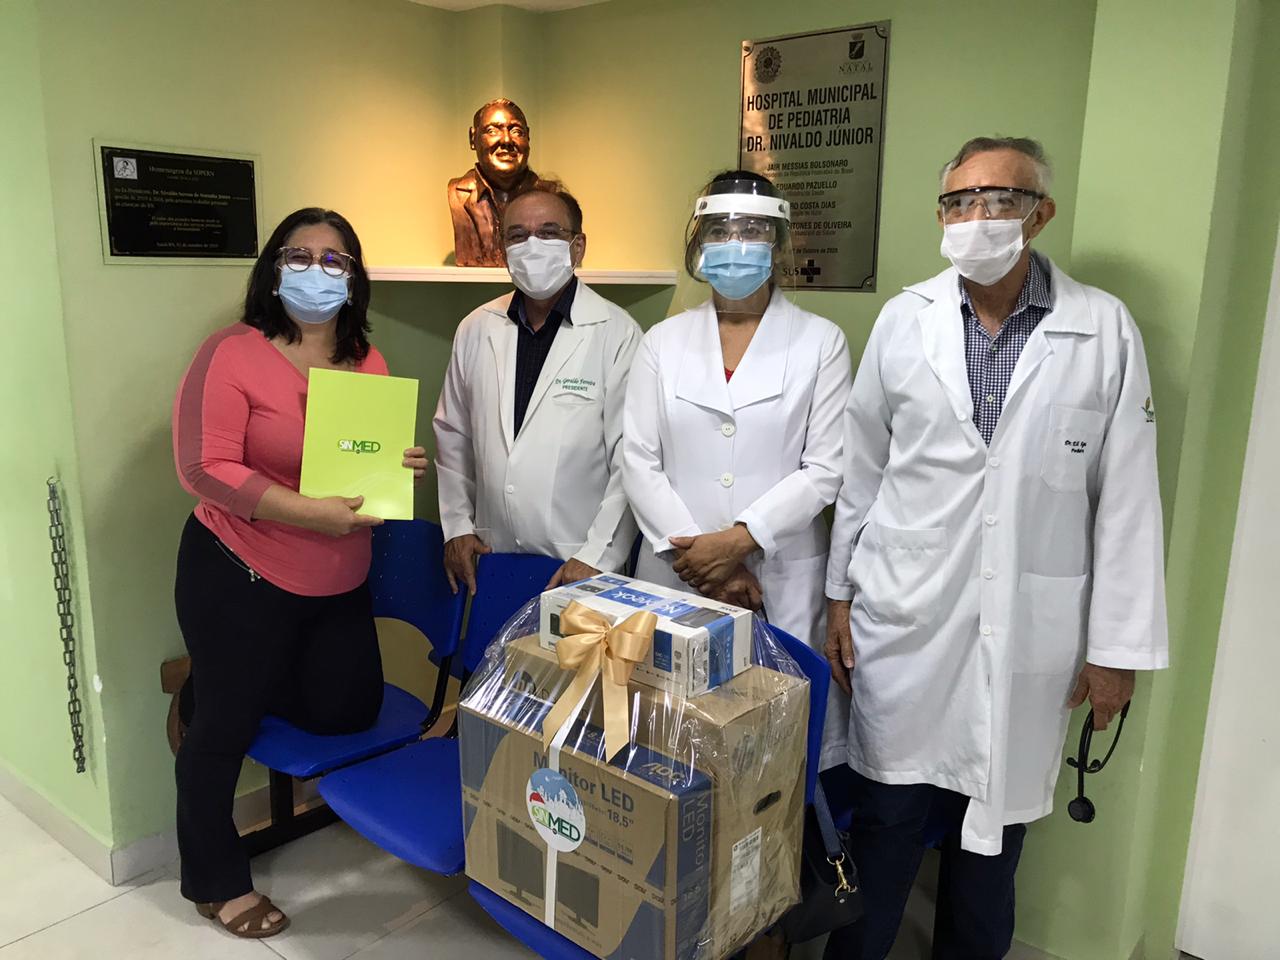 Sinmed RN realiza visita ao Hospital Municipal Dr. Nivaldo Junior